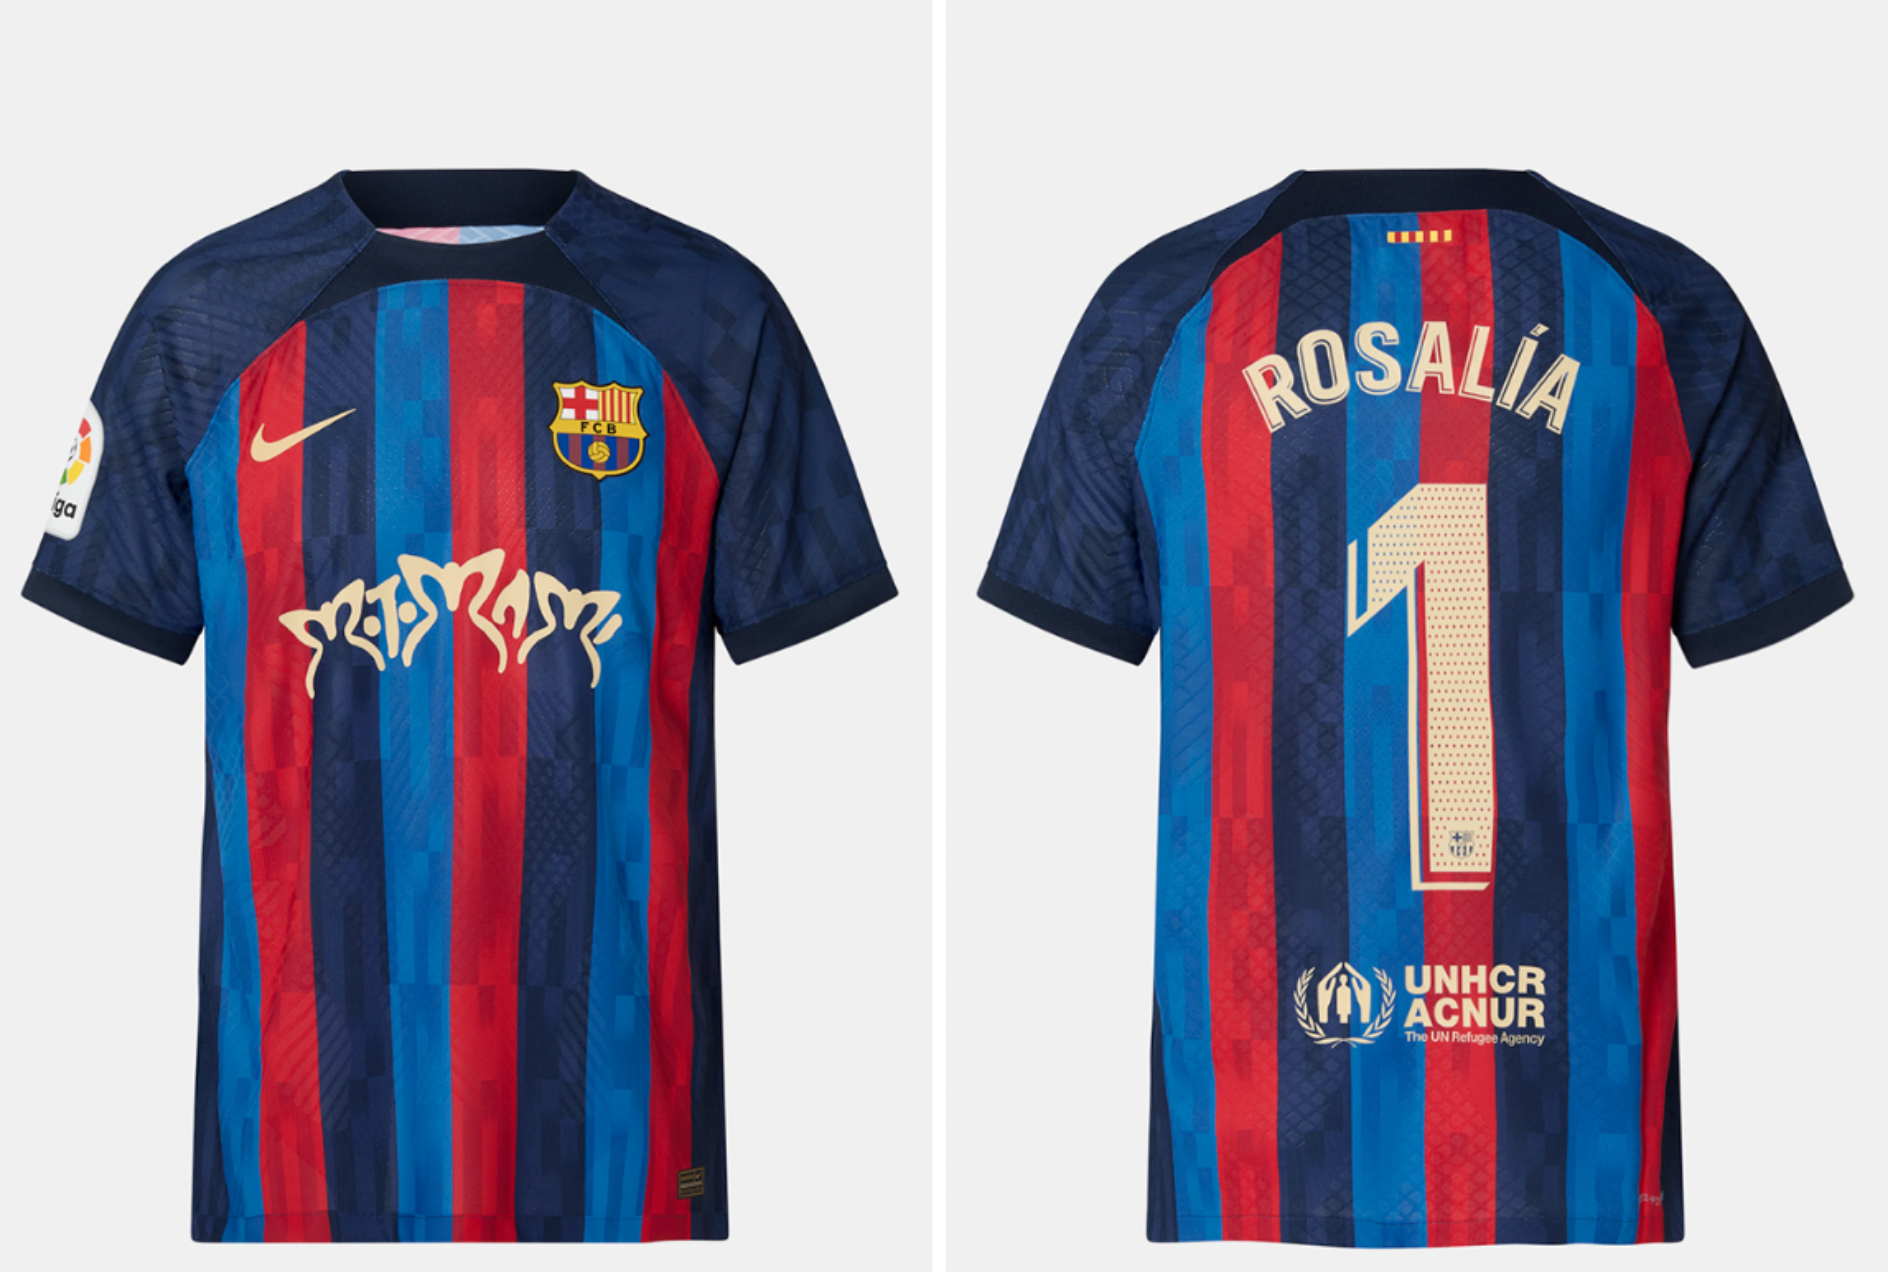 ALT: Rosalía cambia sus looks sofisticados por la camiseta del Barça: cuánto cuesta y dónde comprarla